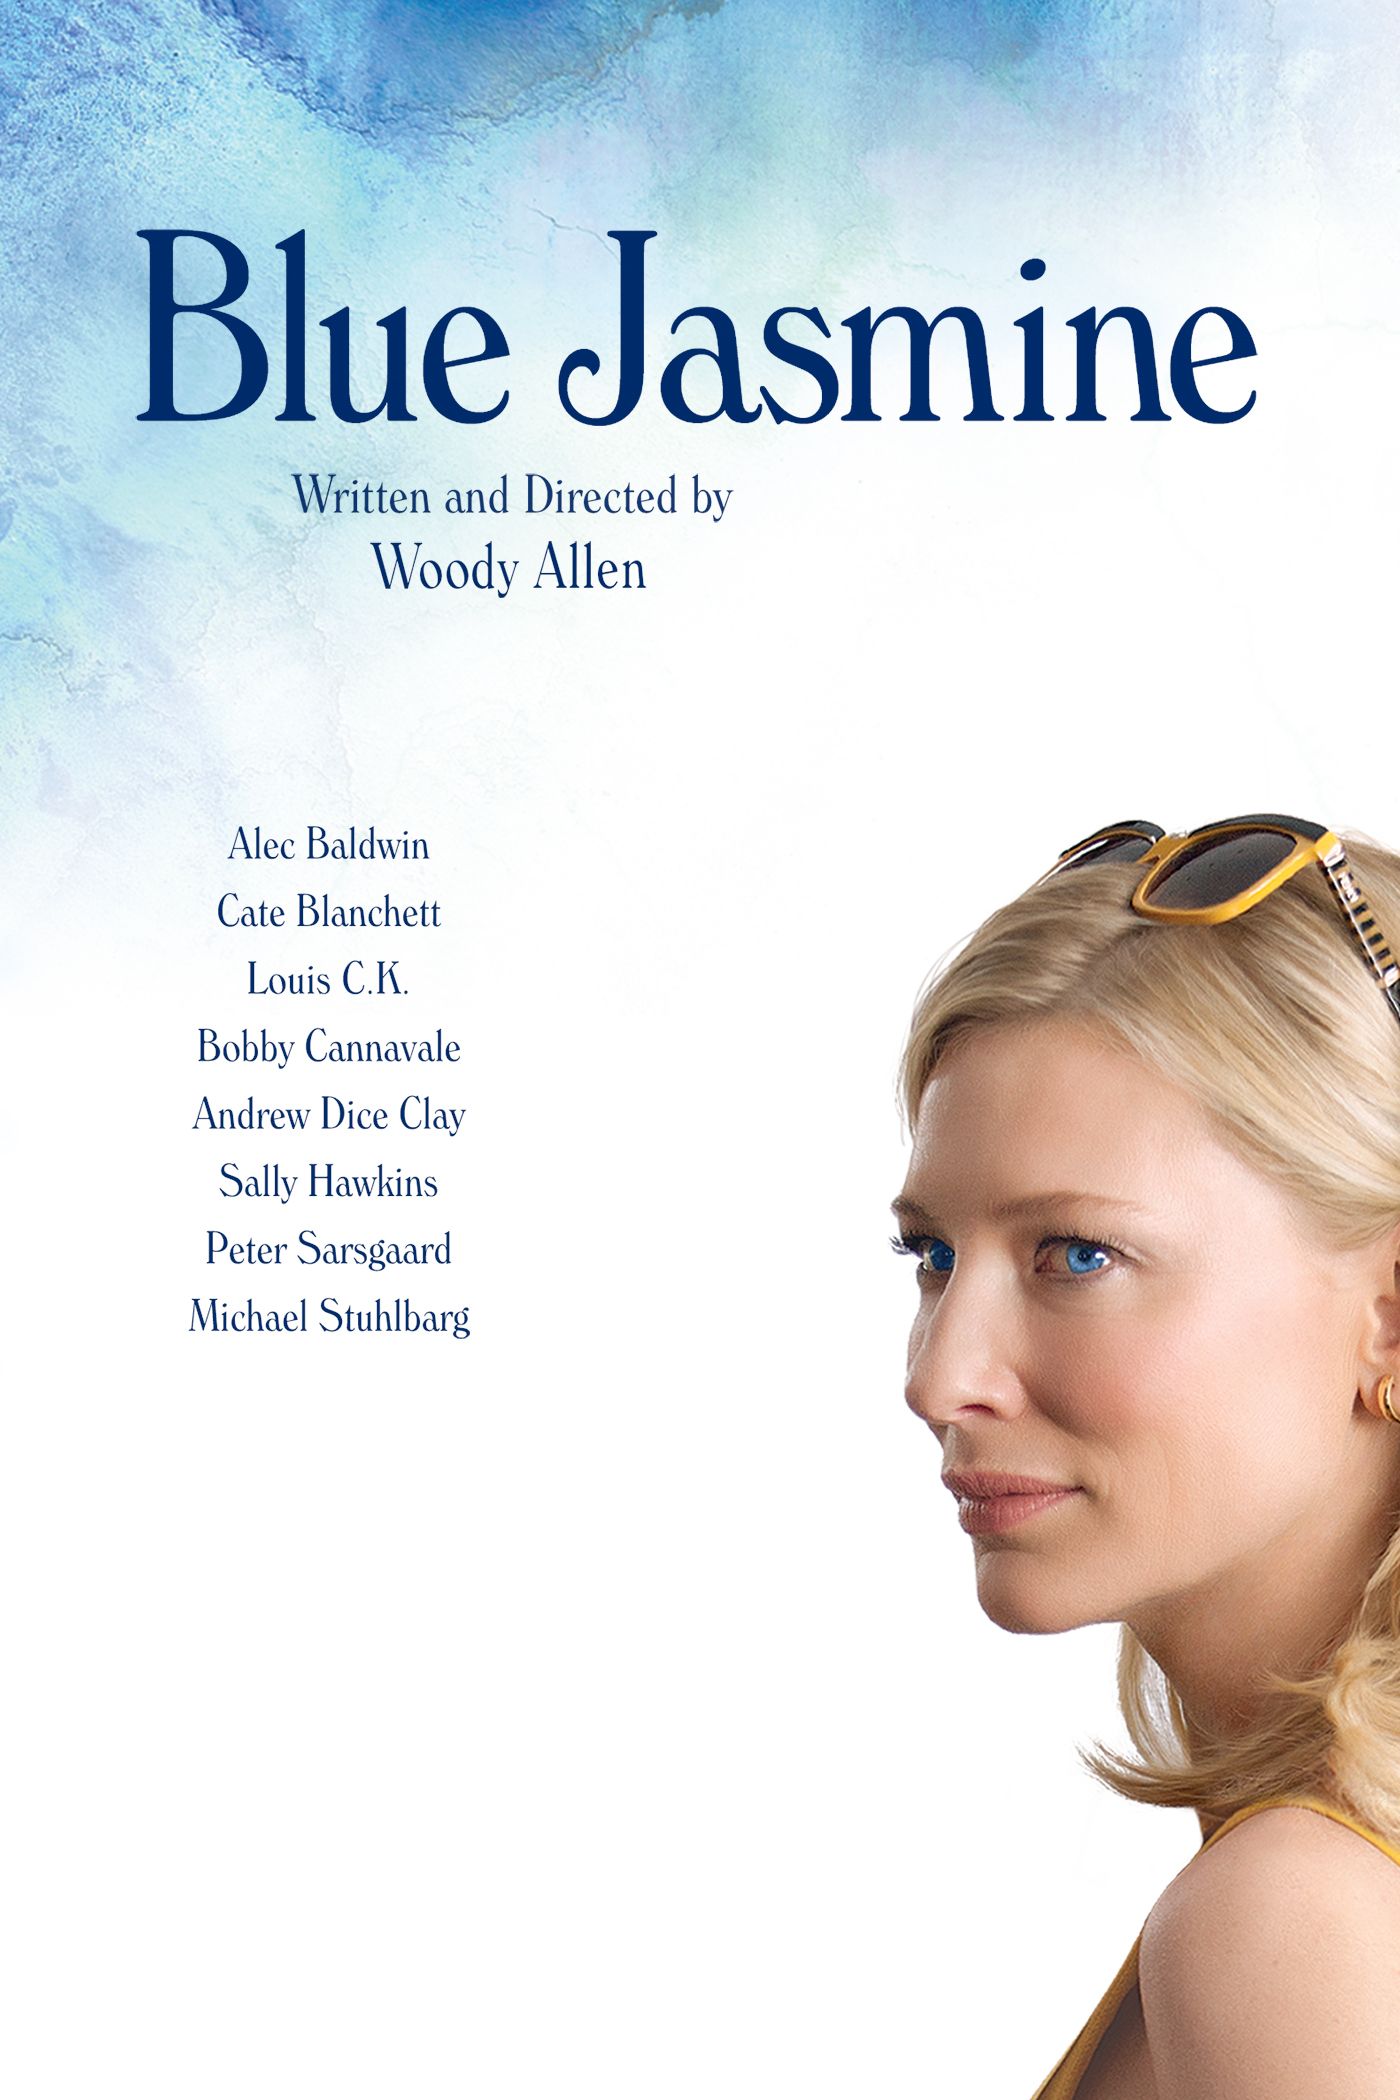 Film of the week: Blue Jasmine